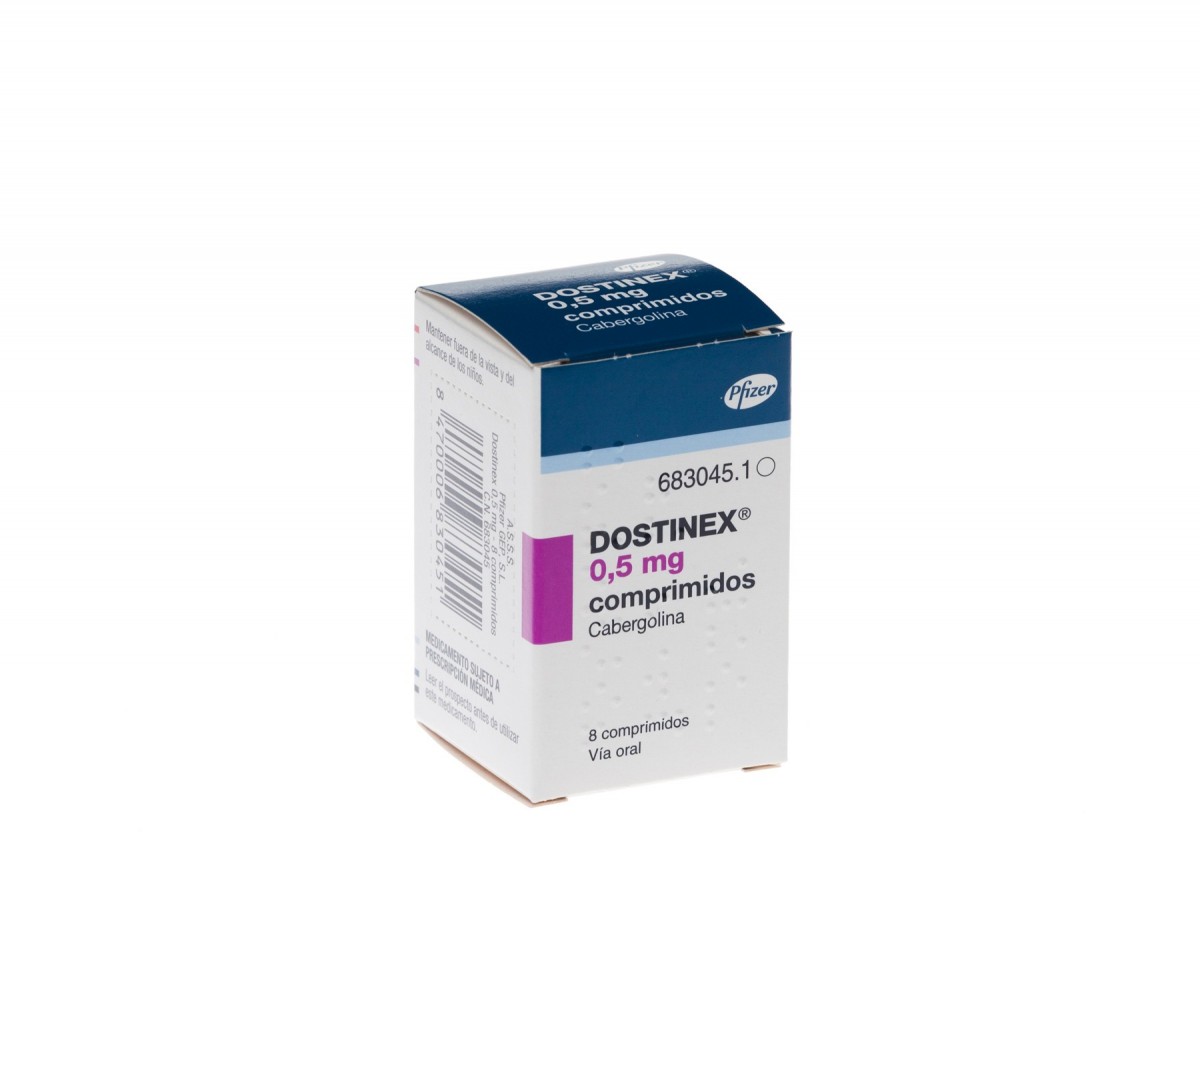 DOSTINEX 0,5 mg COMPRIMIDOS , 8 comprimidos fotografía del envase.